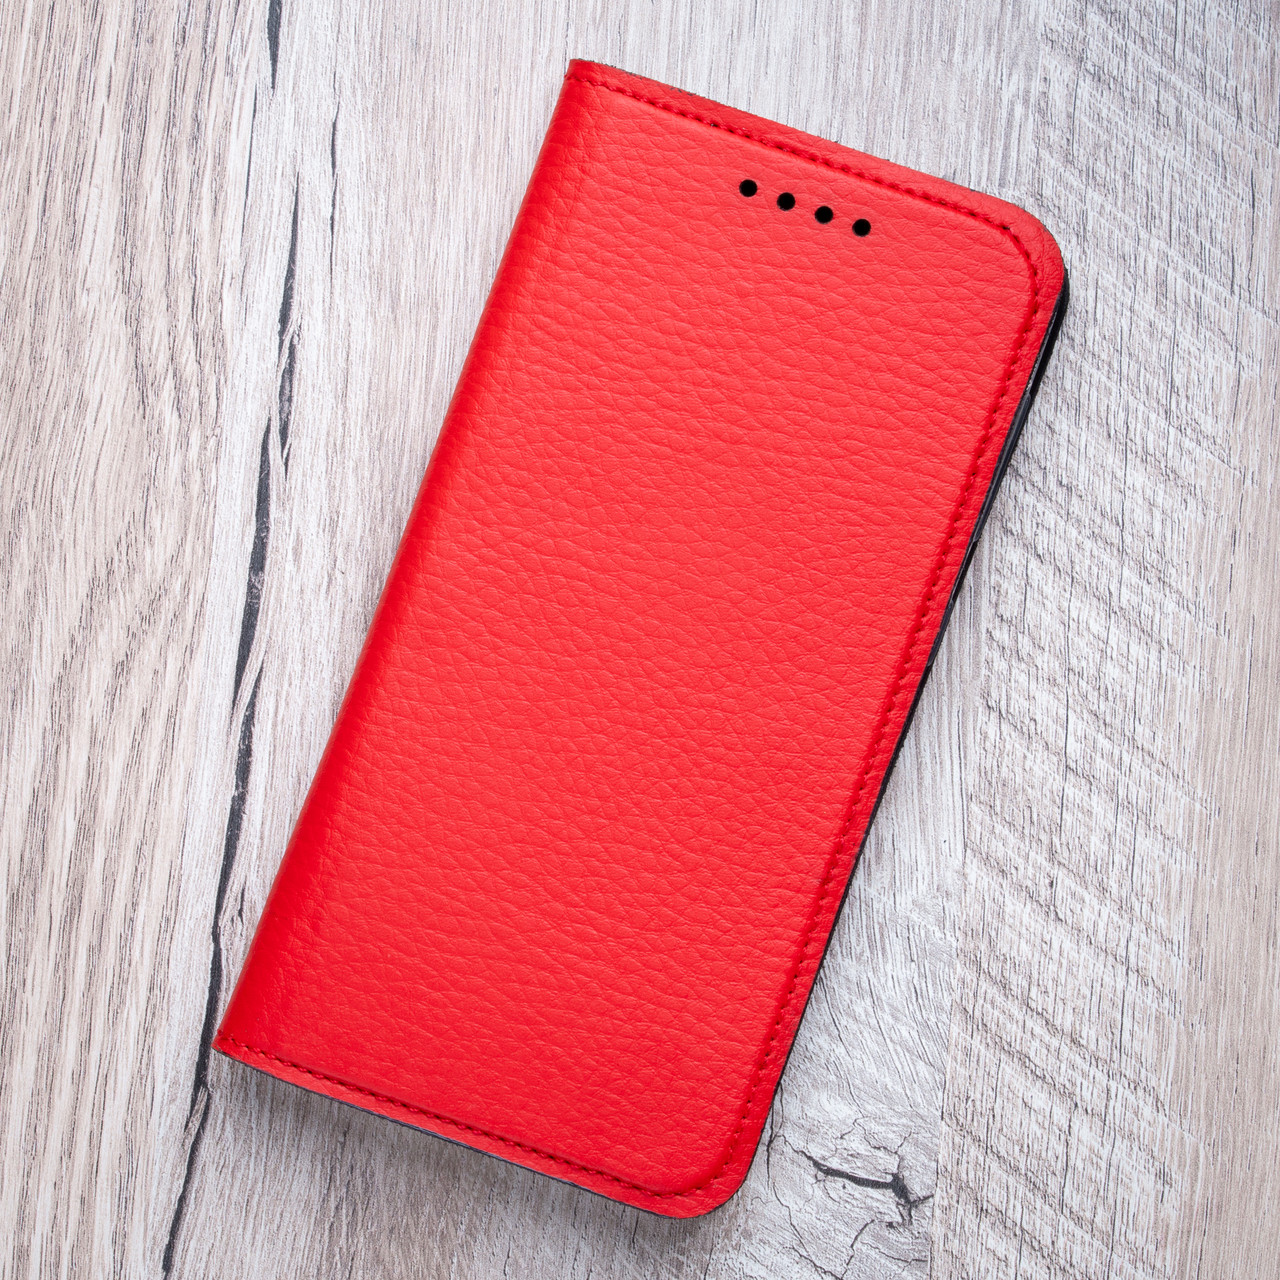 Шкіряний чохол книжка для телефону Sony Xperia M5 Dual від Jk-case, червоний